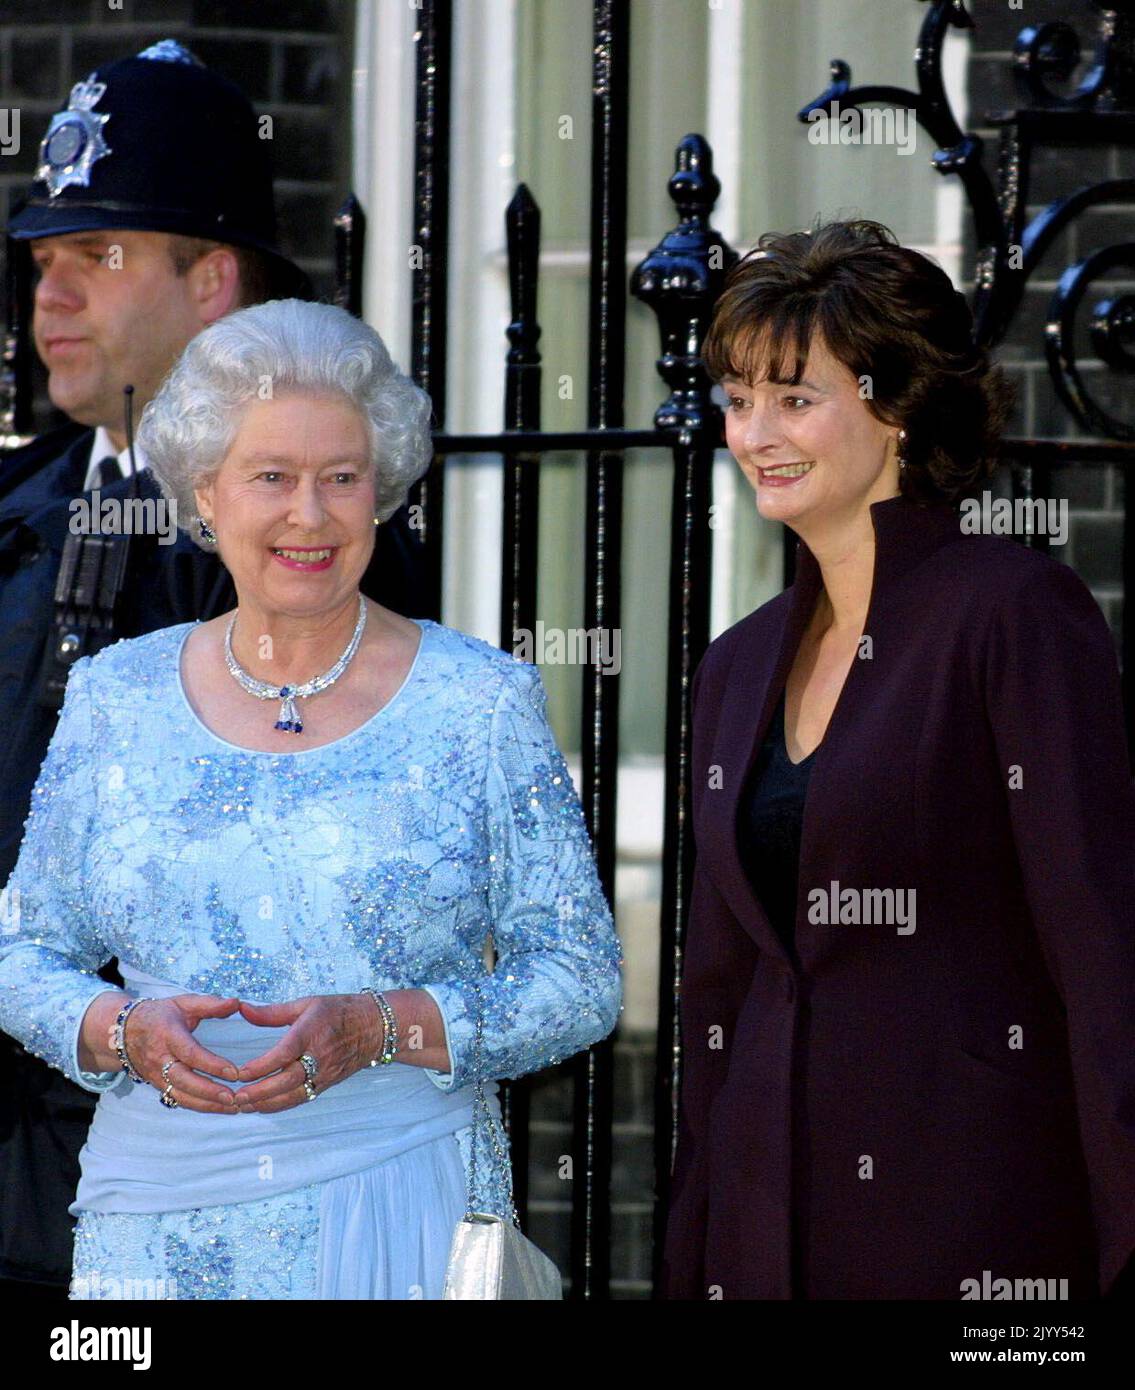 Photo du dossier datée du 29/4/2002, de la reine Elizabeth II, debout aux côtés de Cherie, épouse du Premier ministre britannique Tony Blair, à l'extérieur du 10 Downing Street, où M. Blair était l'hôte d'un dîner de célébration du jubilé royal. Date de publication : jeudi 8 septembre 2022. Banque D'Images